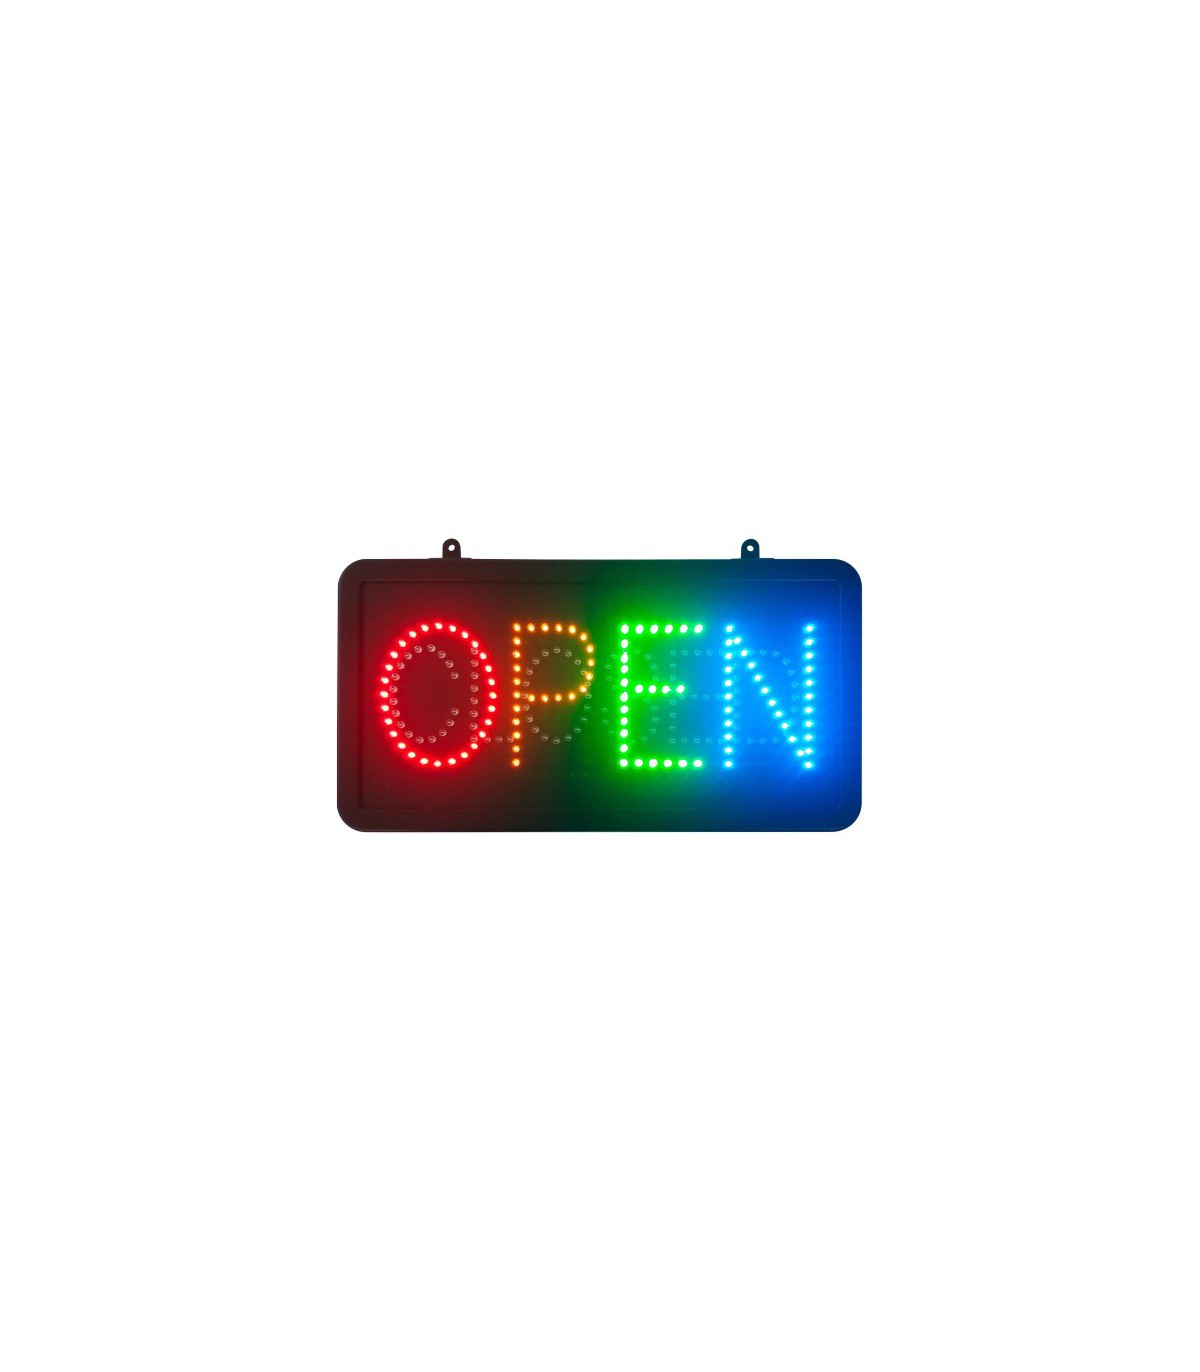 Enseigne lumineuse LED intérieur OPEN / CLOSED Résultats page pour